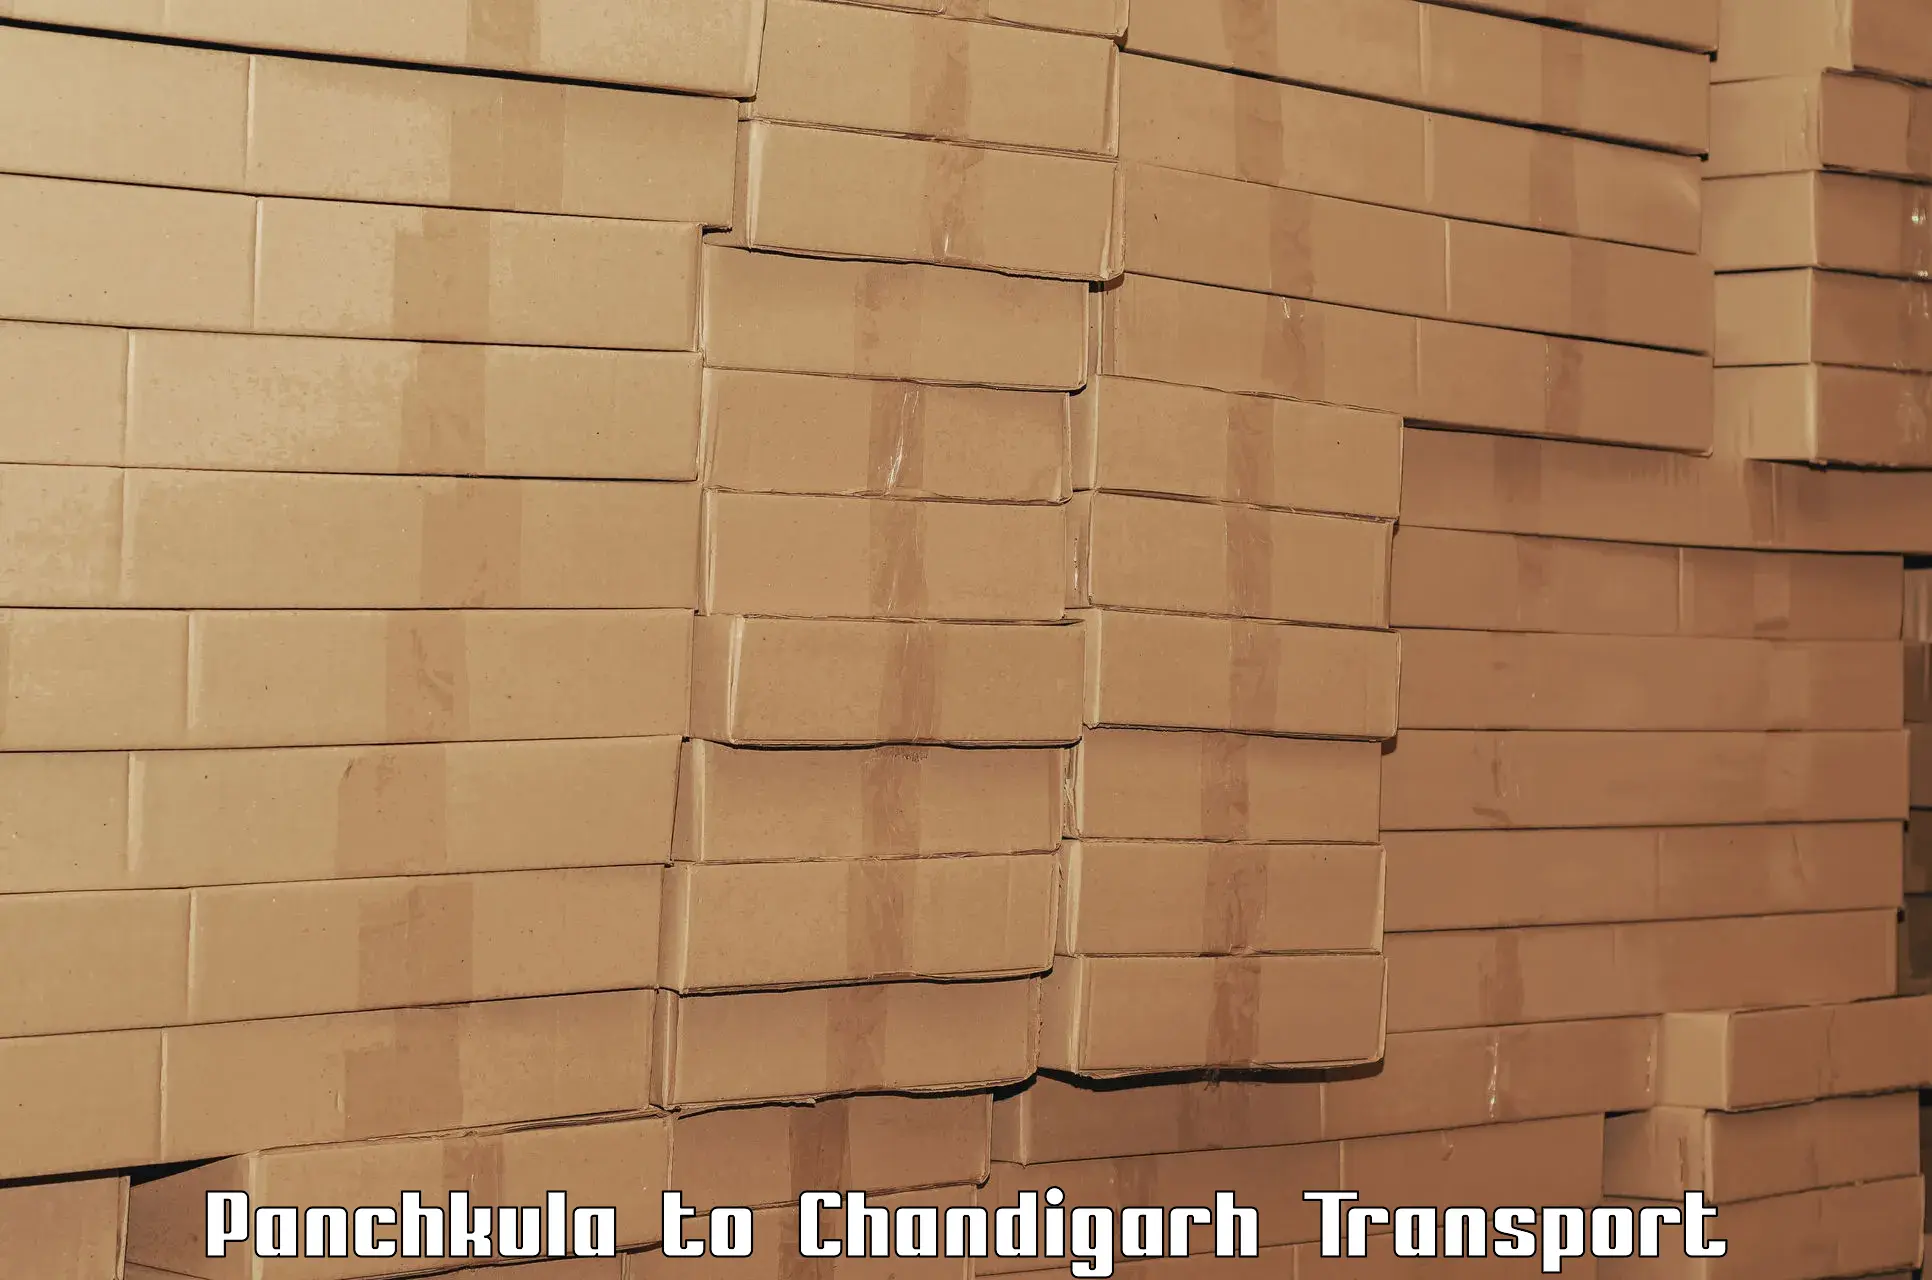 Logistics transportation services Panchkula to Chandigarh